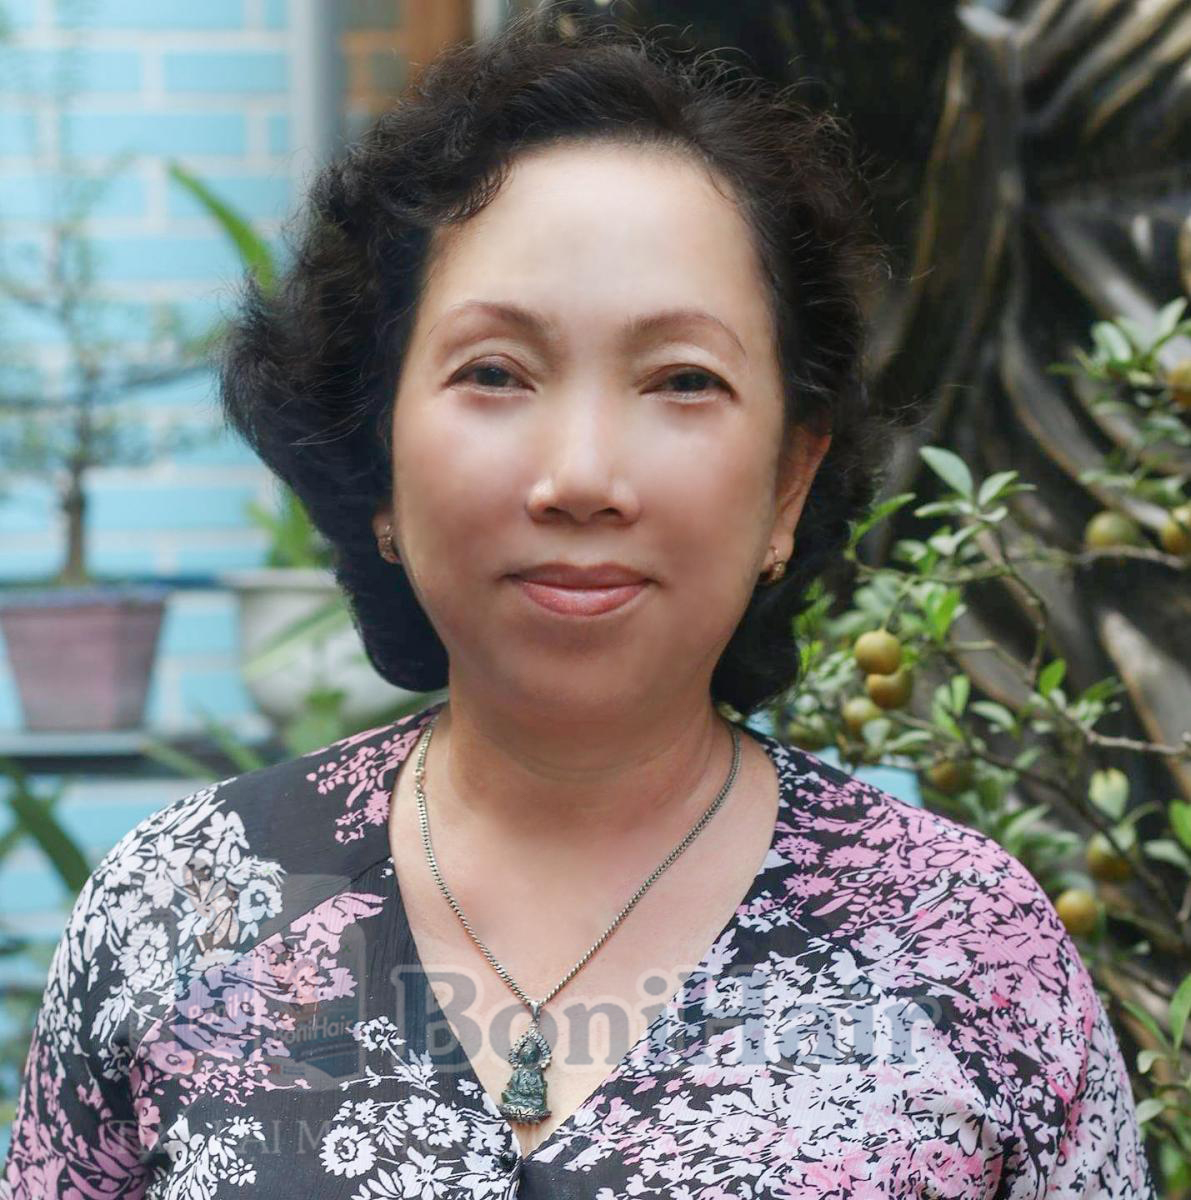 Hồ Chí Minh: Bonihair - Phá vỡ quy luật thời gian, tìm lại mái tóc đen ở tuổi 57!